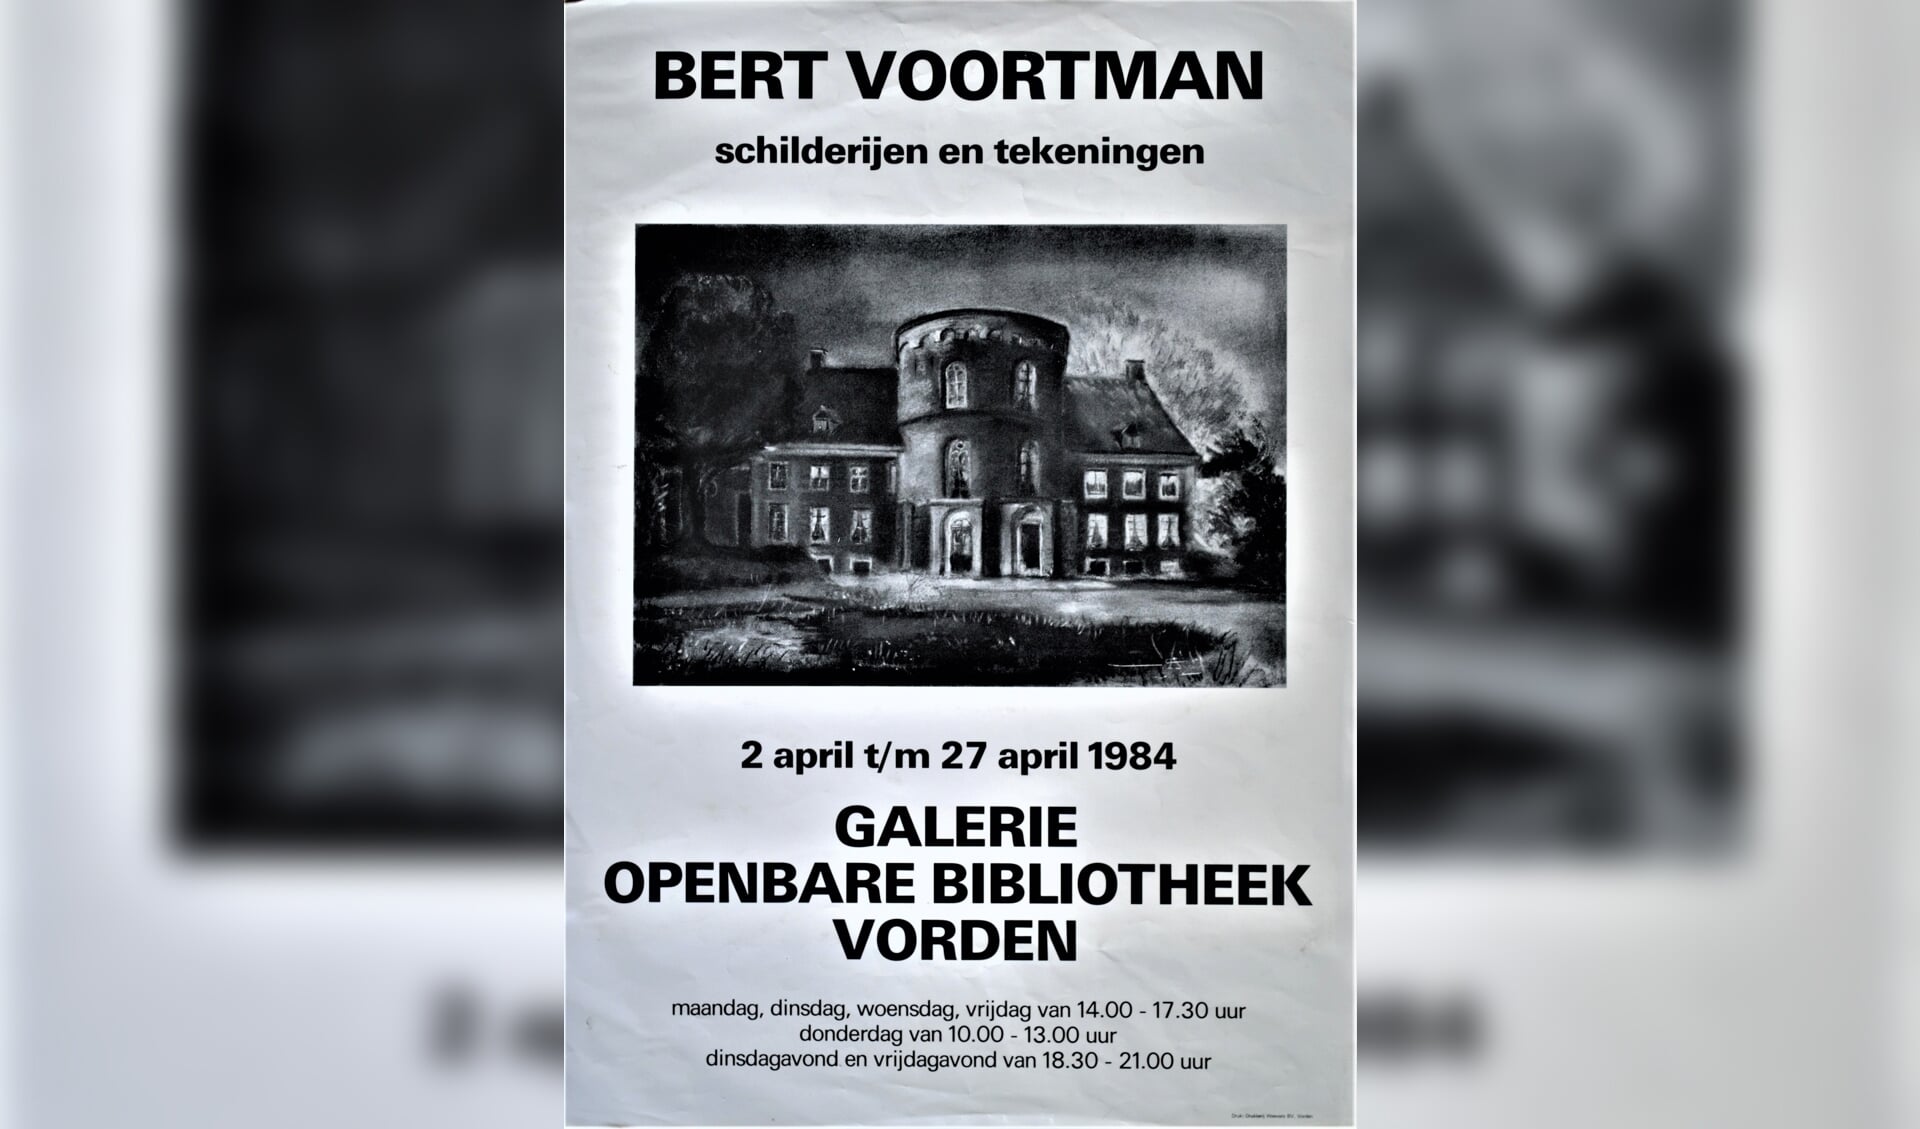 Een poster voor een expositie in de Vordense bibliotheek, in april 1984. Beeld: archief Willem Sprengers